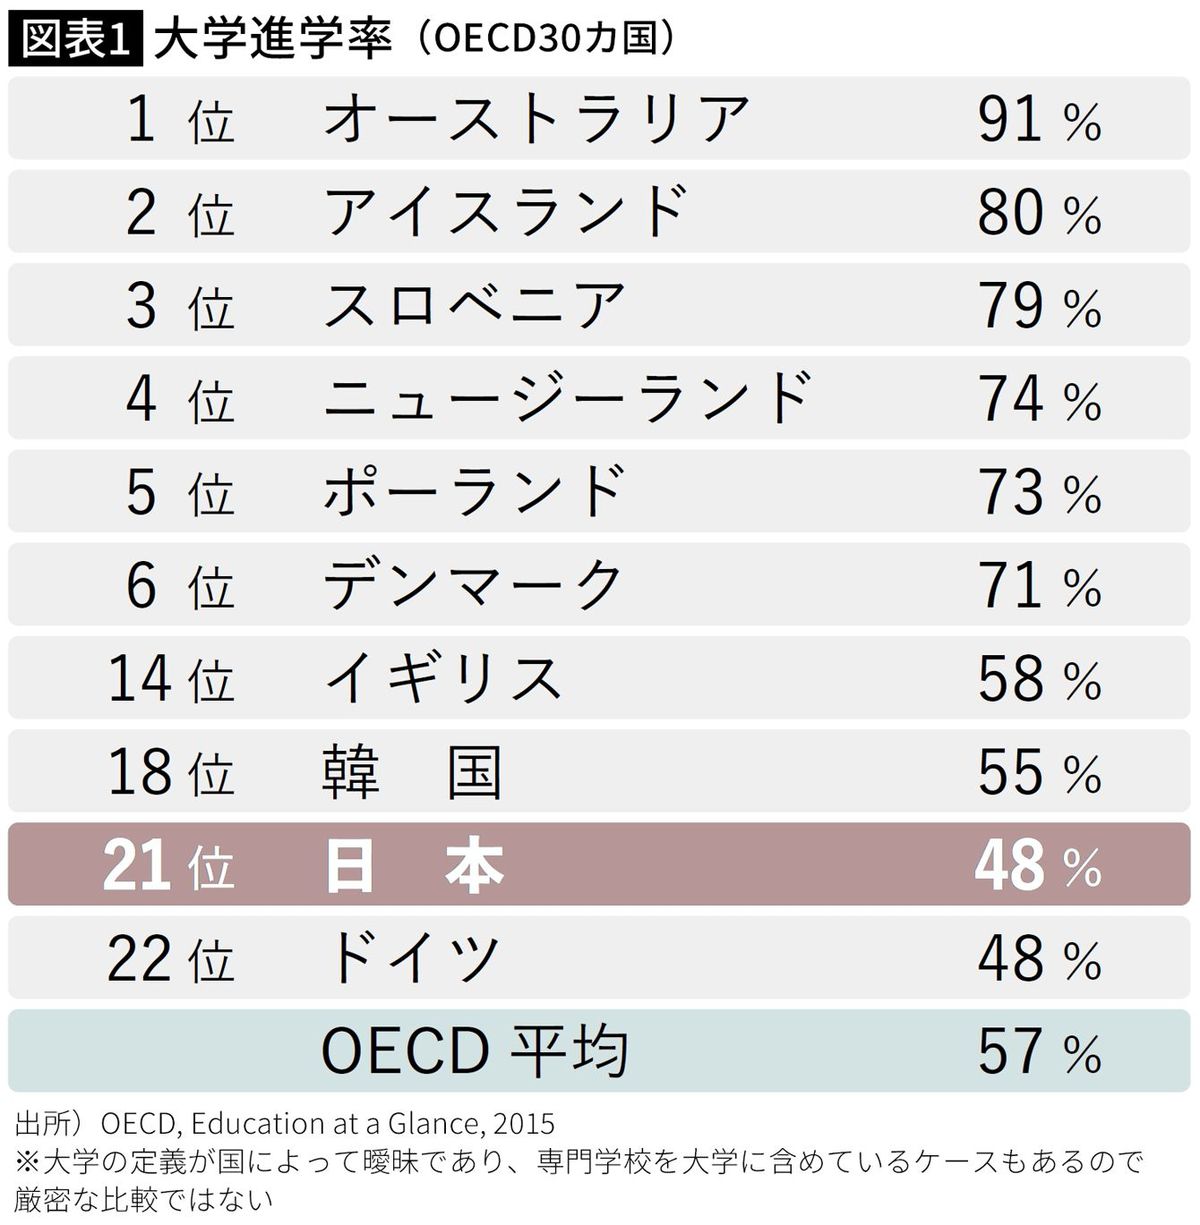 【図表】大学進学率（OECD30カ国）